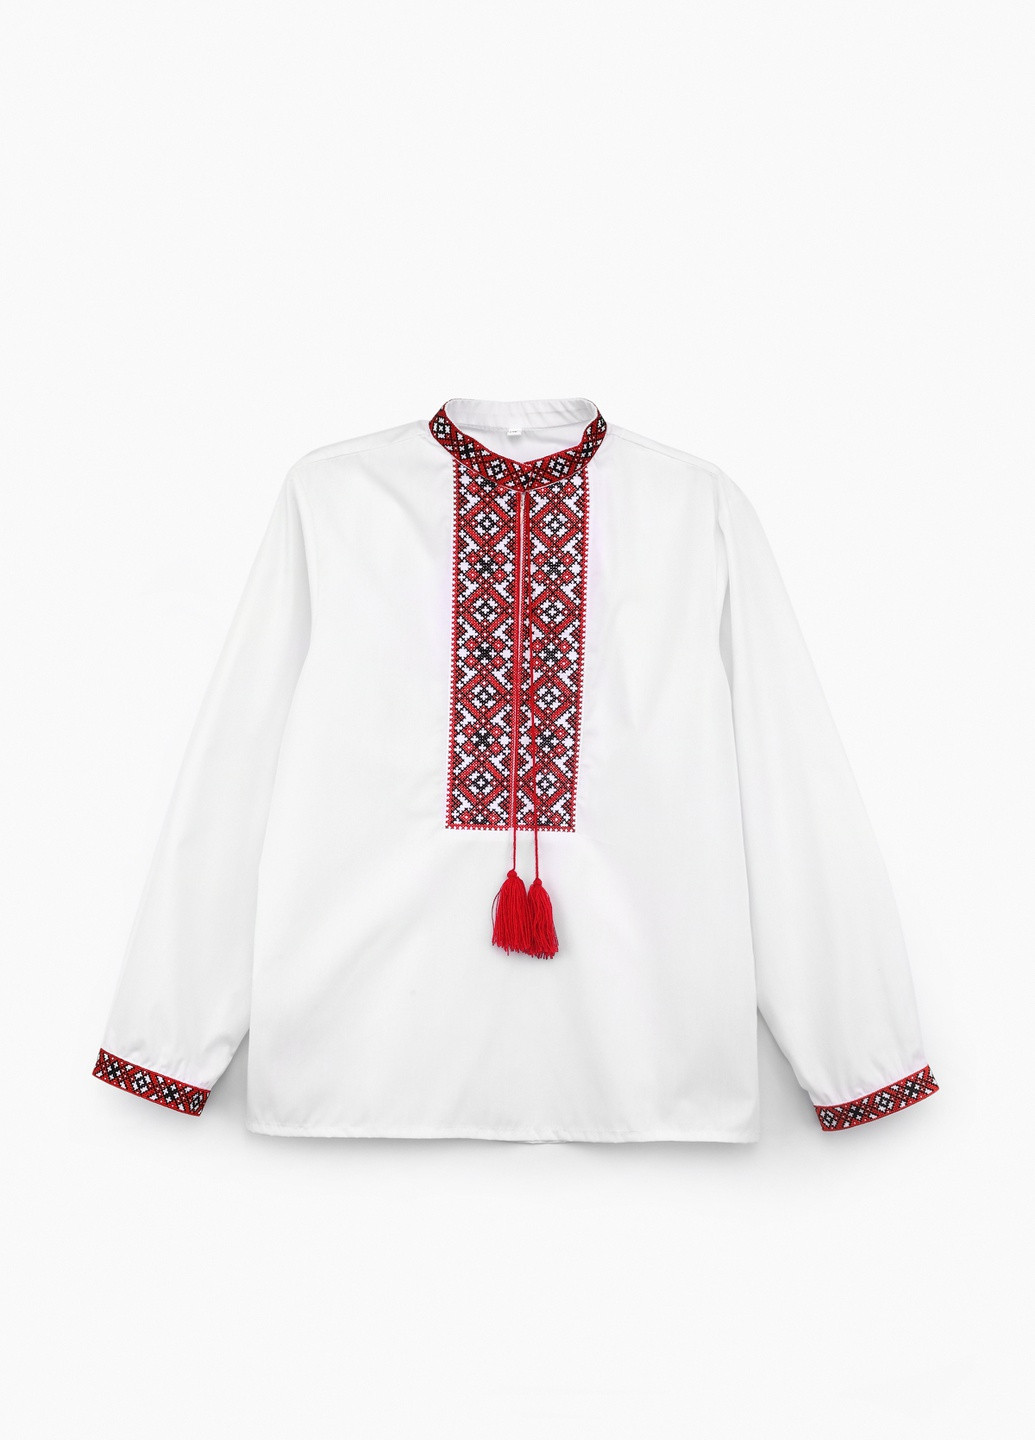 Рубашка вышиванка Козачок однотонная красная праздничная